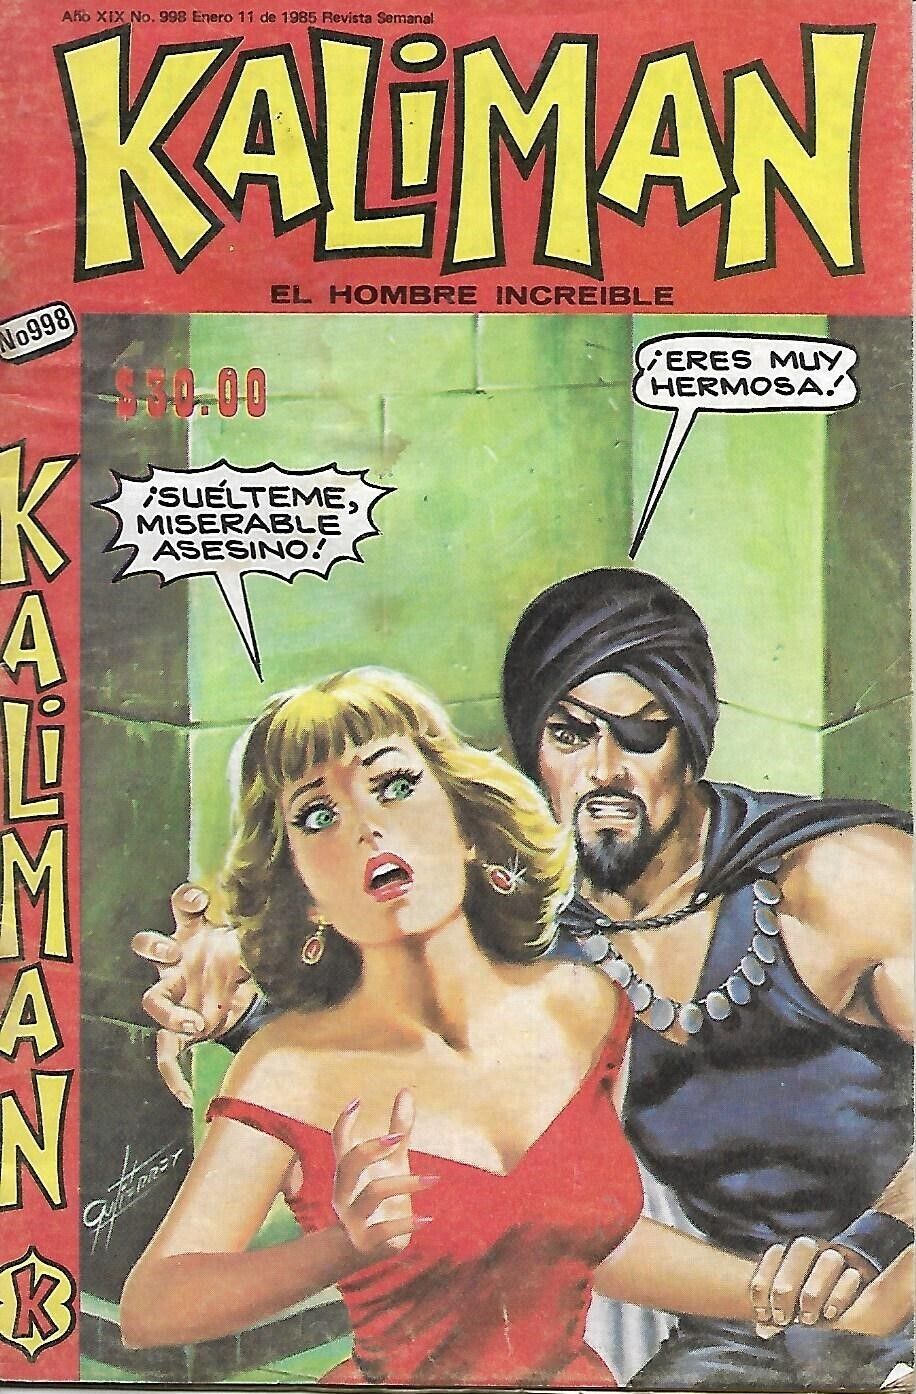 Kaliman El Hombre Increible #998 - Enero 11, 1985 - Mexico